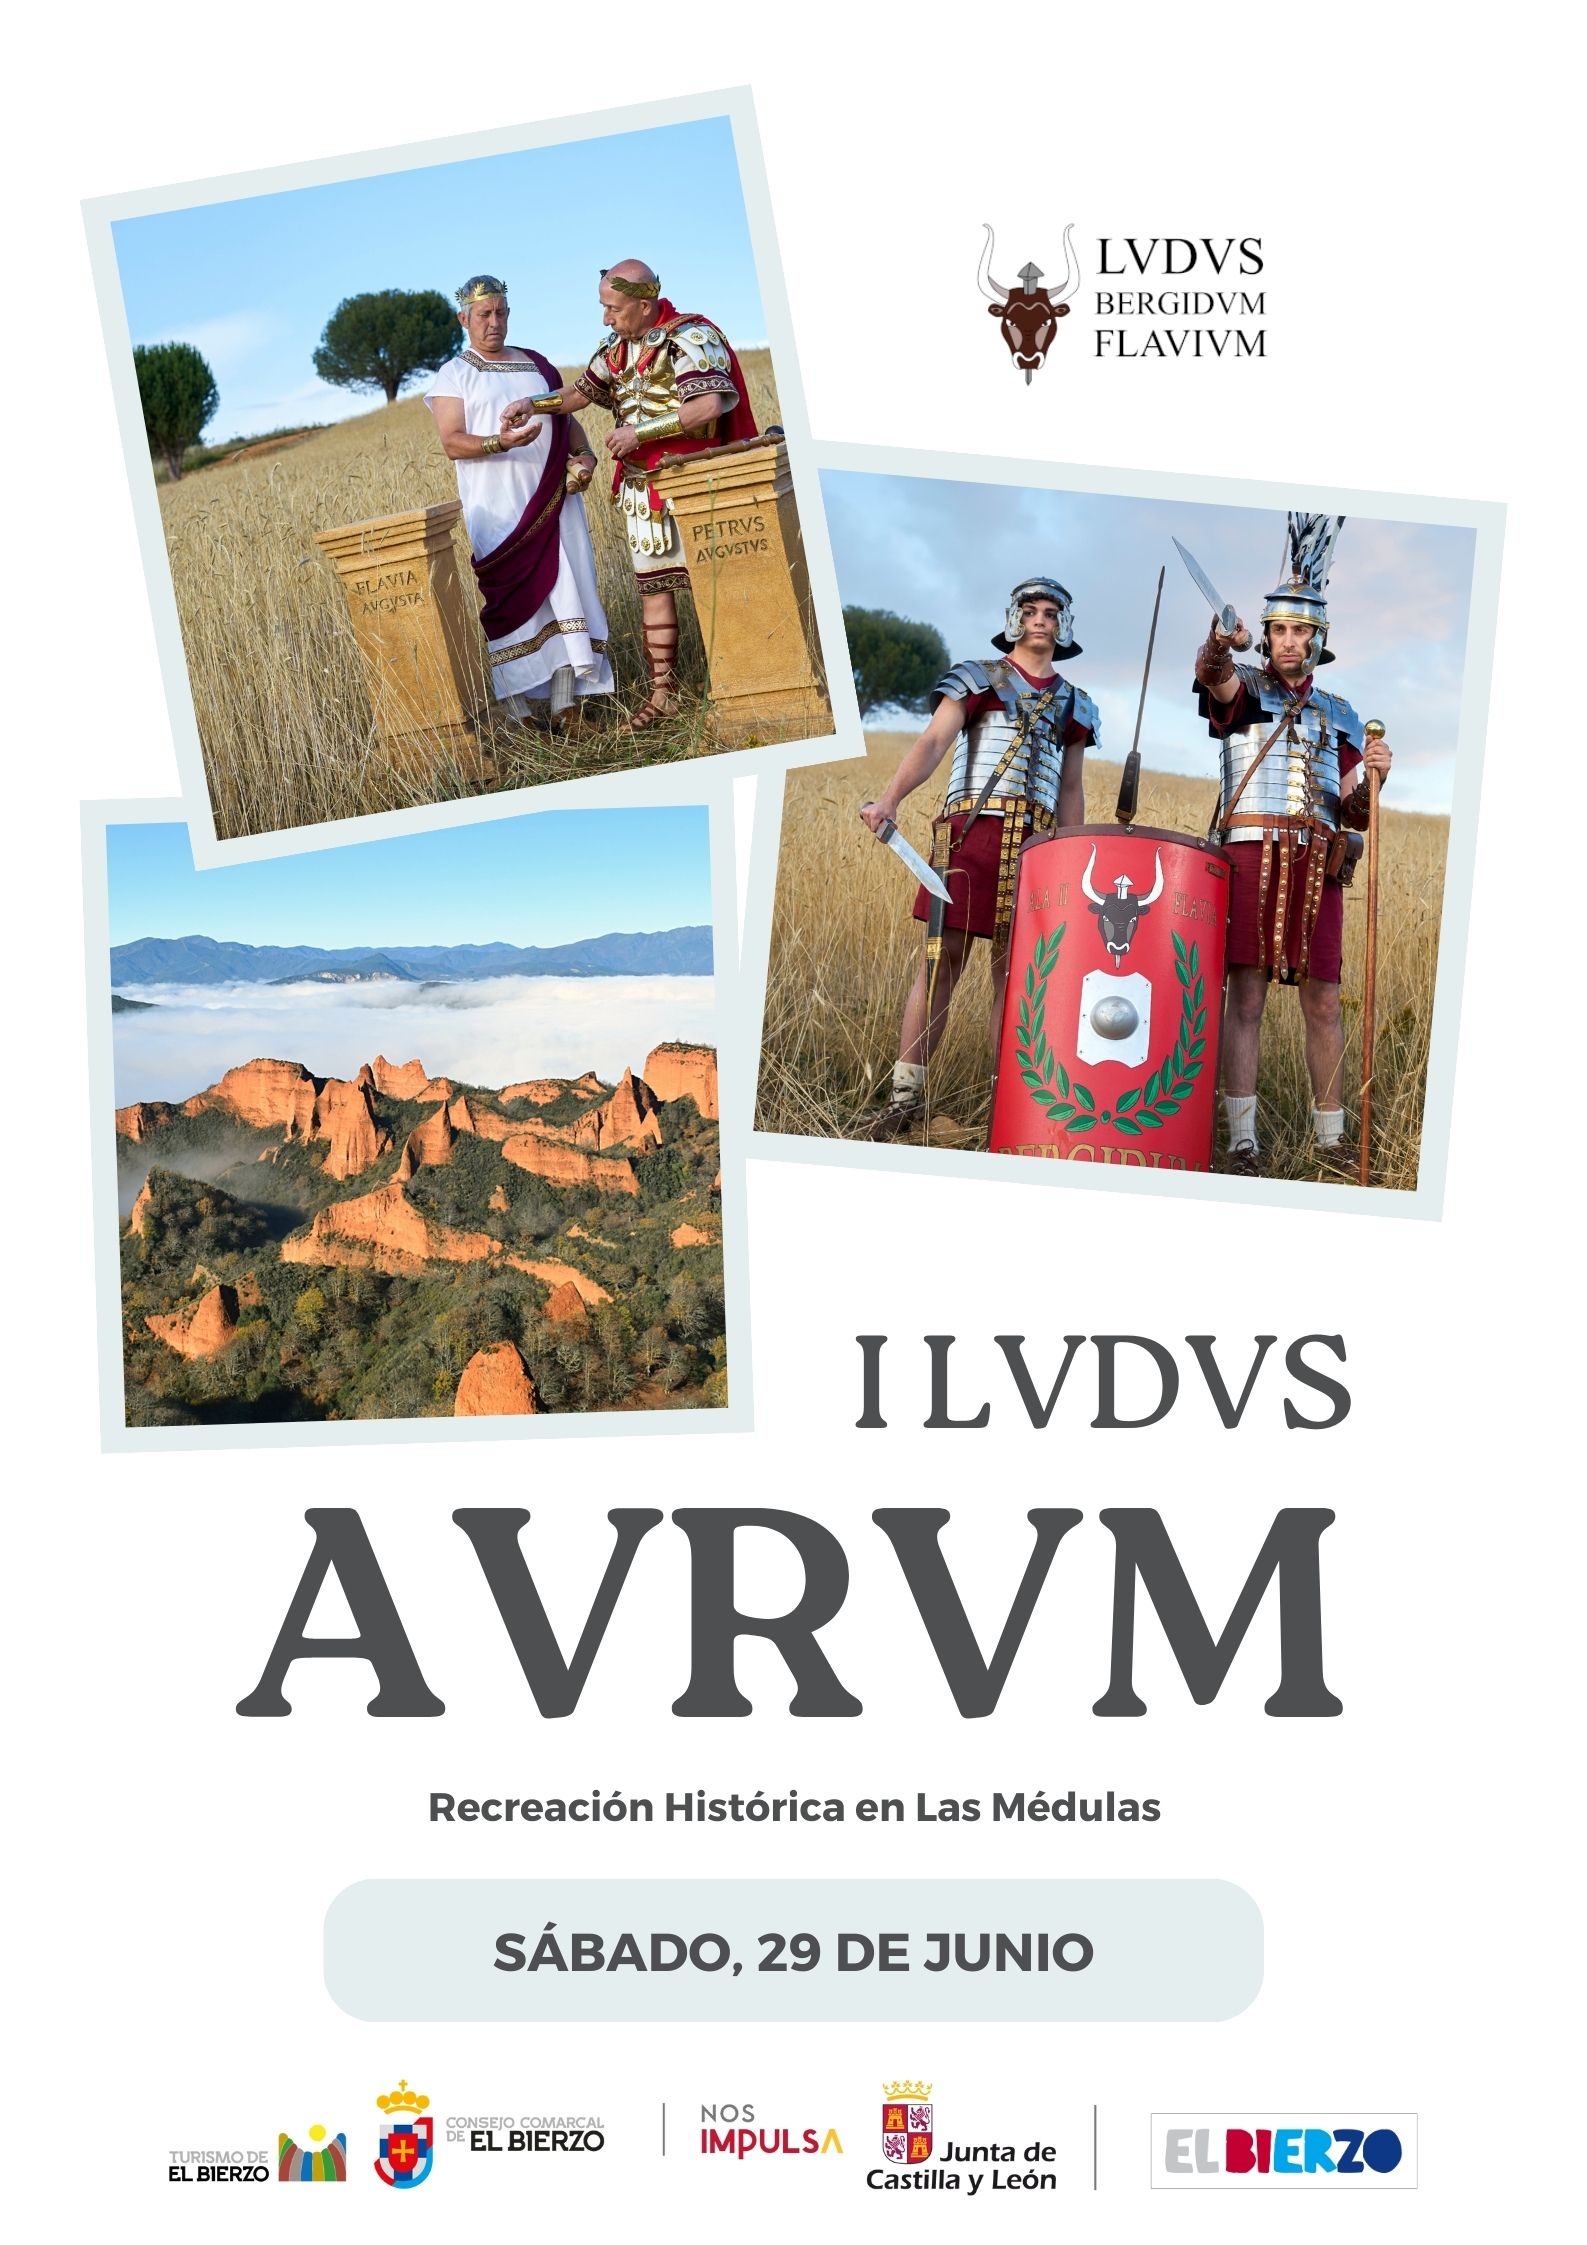 Este sábado se celebra en Las Médulas la I Lvdvs Avrvm, recreación histórica de la época romana 3